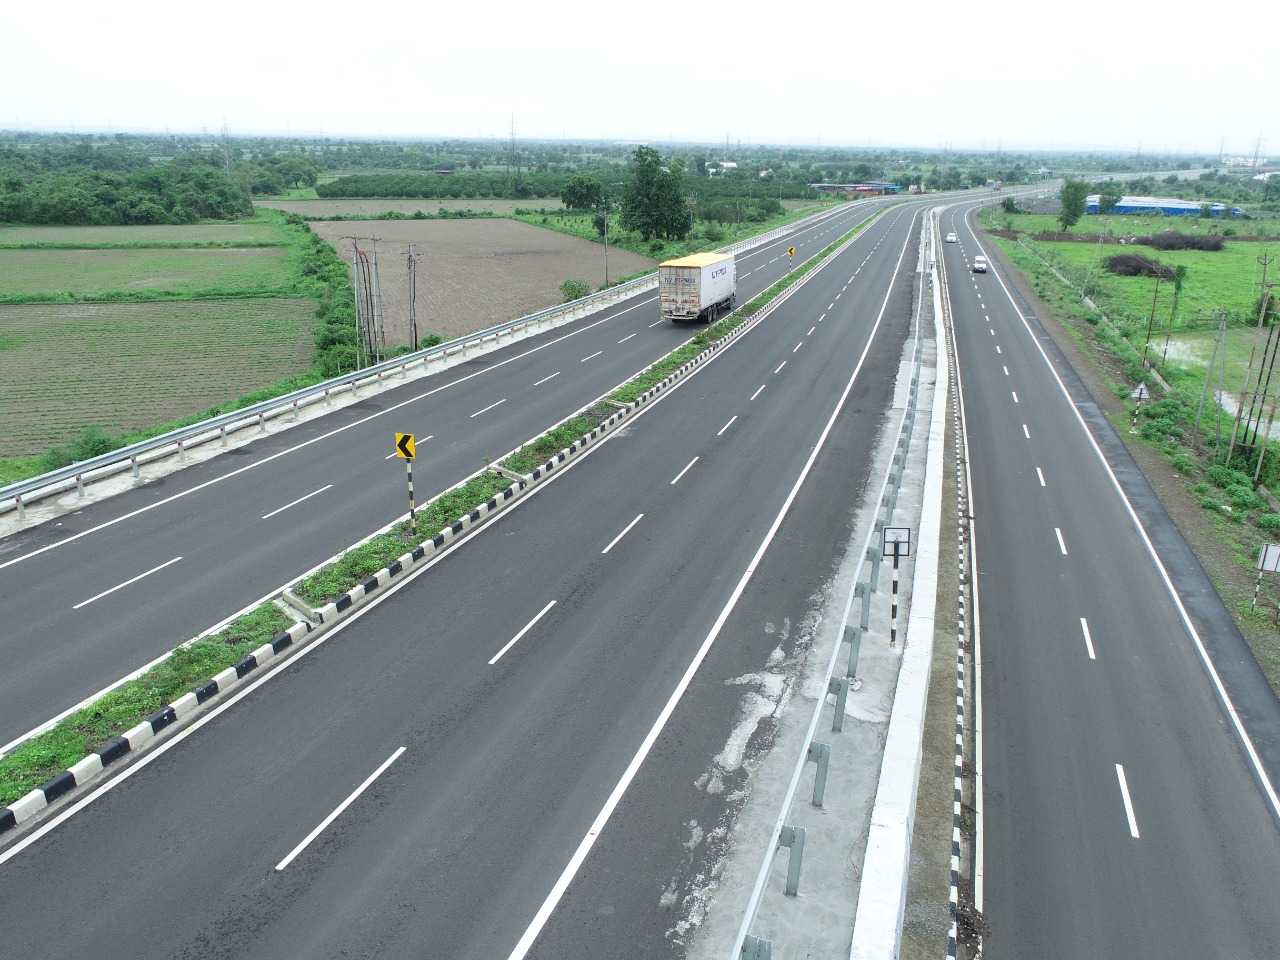 सावनेर धापेवाडा गोंडखैरी या चौपदरी रस्त्याच्या सुशोभीकरणातून भक्तीमार्ग तयार व्हावा - केंद्रीय रस्ते वाहतूक महामार्ग मंत्री नितिन गडकरी